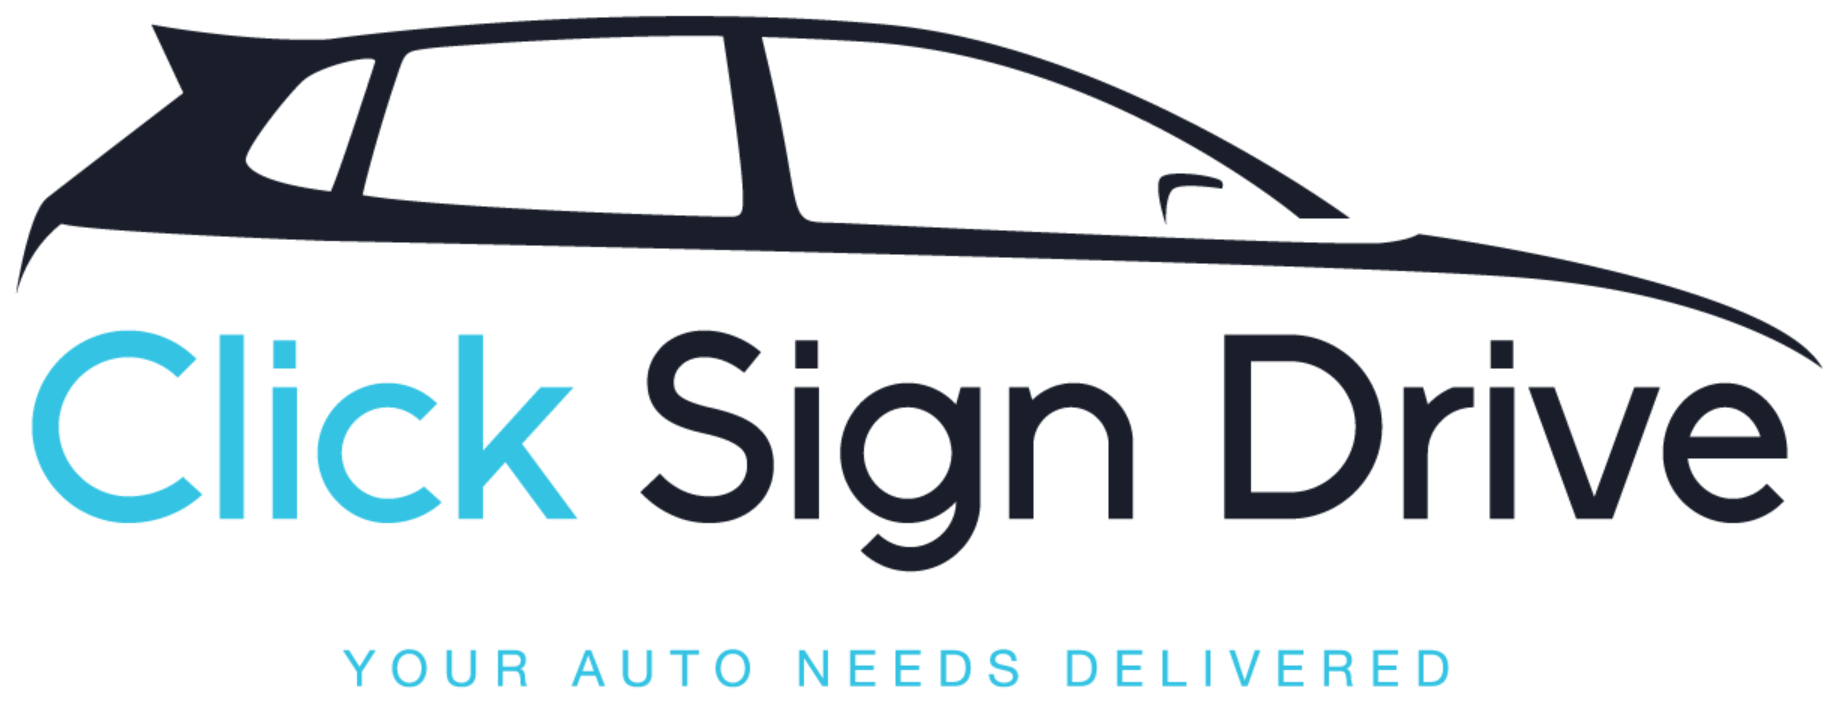 Click Sign Drive logo